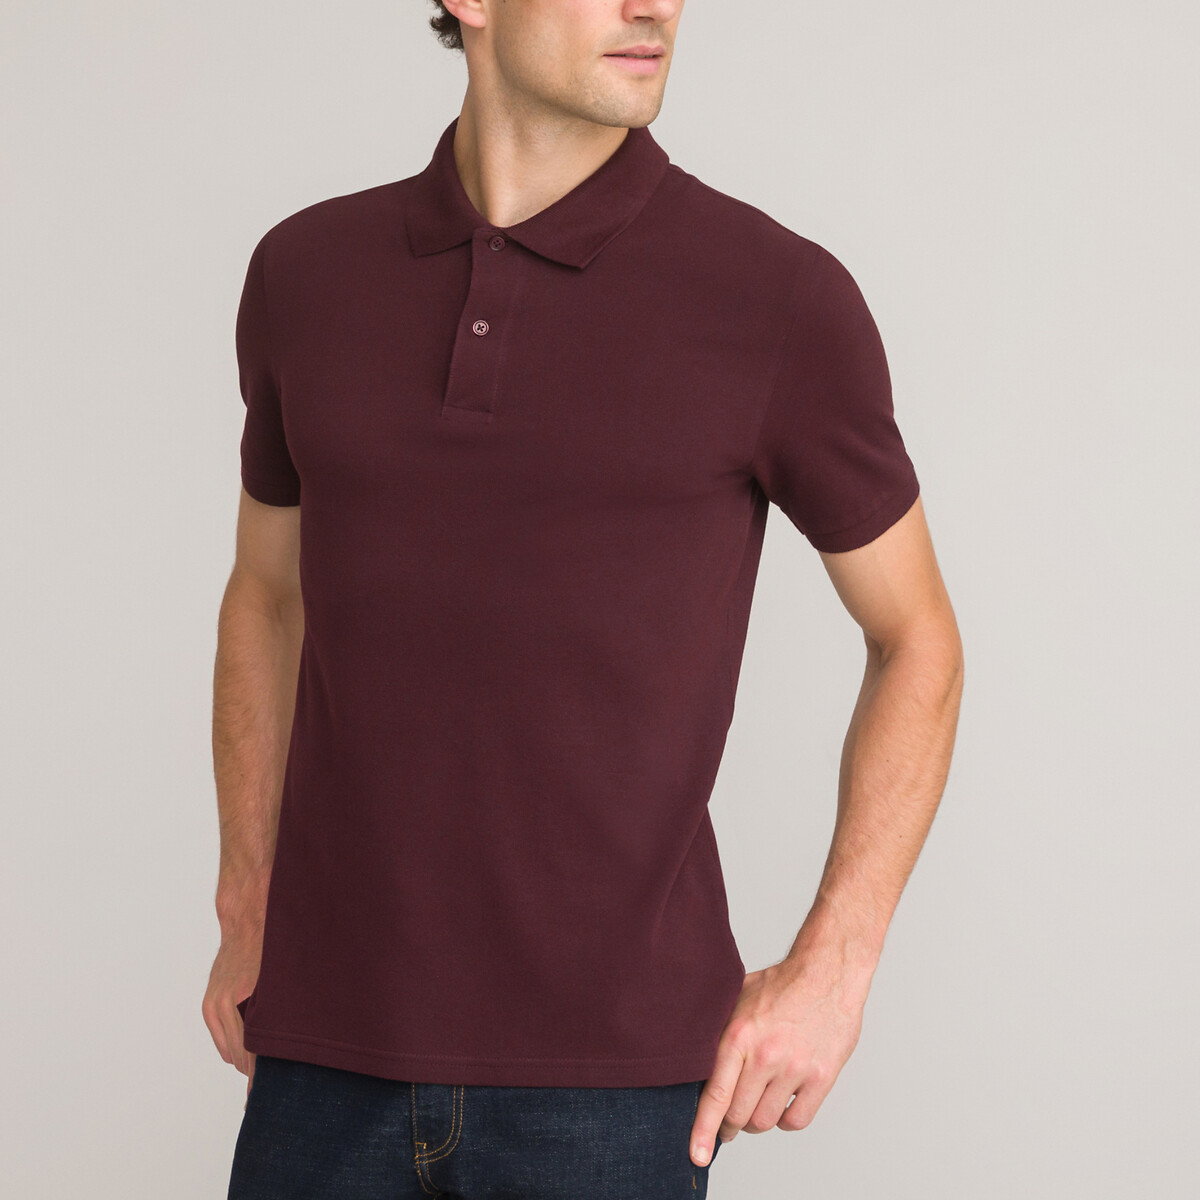 La Redoute Homme Vêtements Tops & T-shirts T-shirts Polos Polo coton manches courtes VINSMOKE 